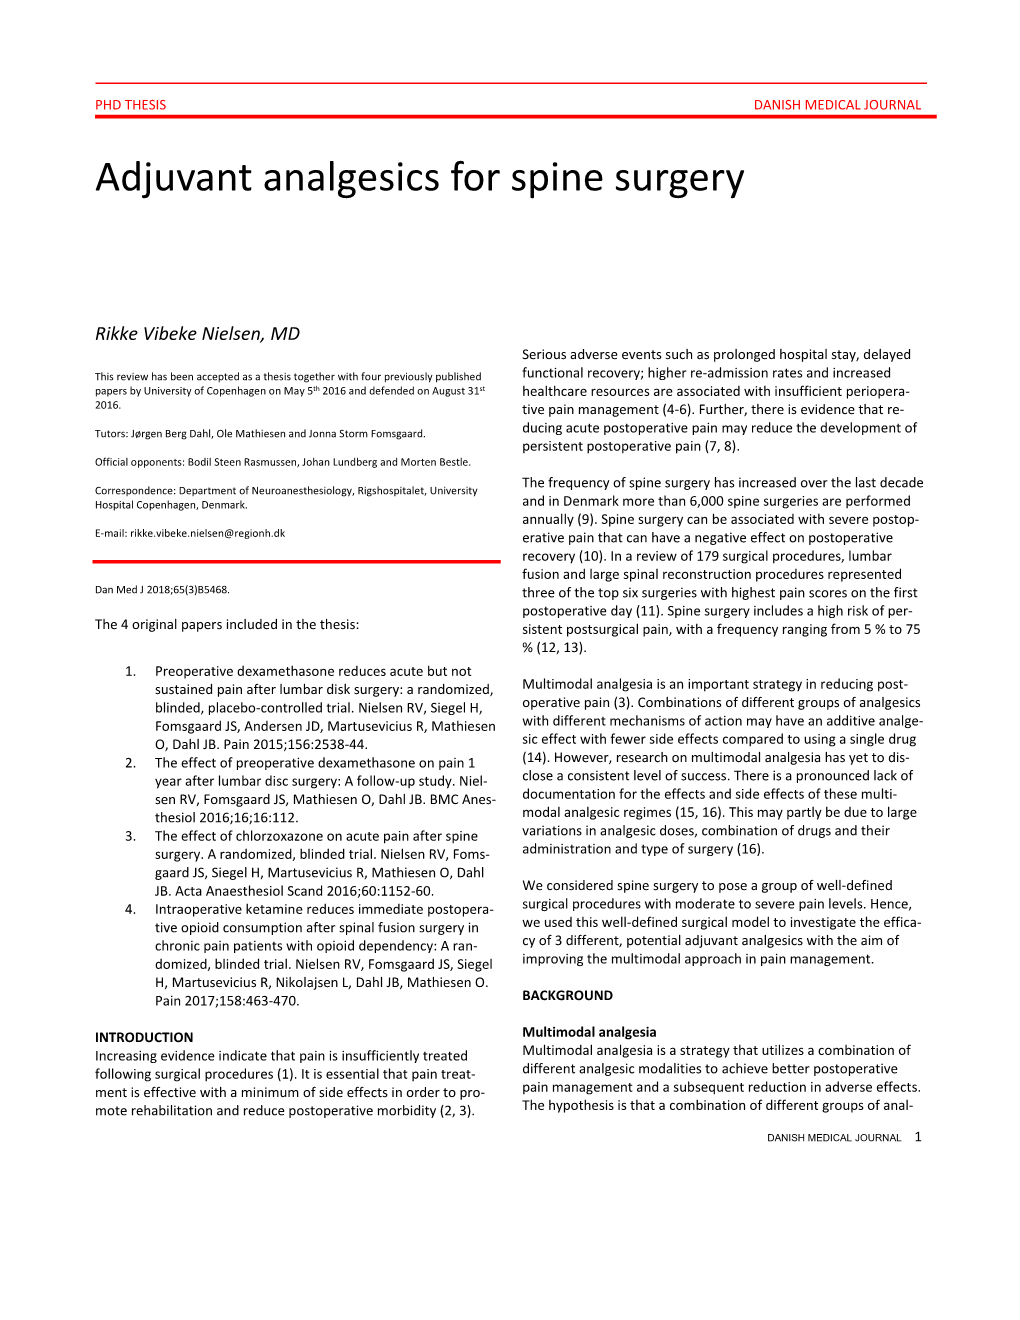 Adjuvant Analgesics for Spine Surgery